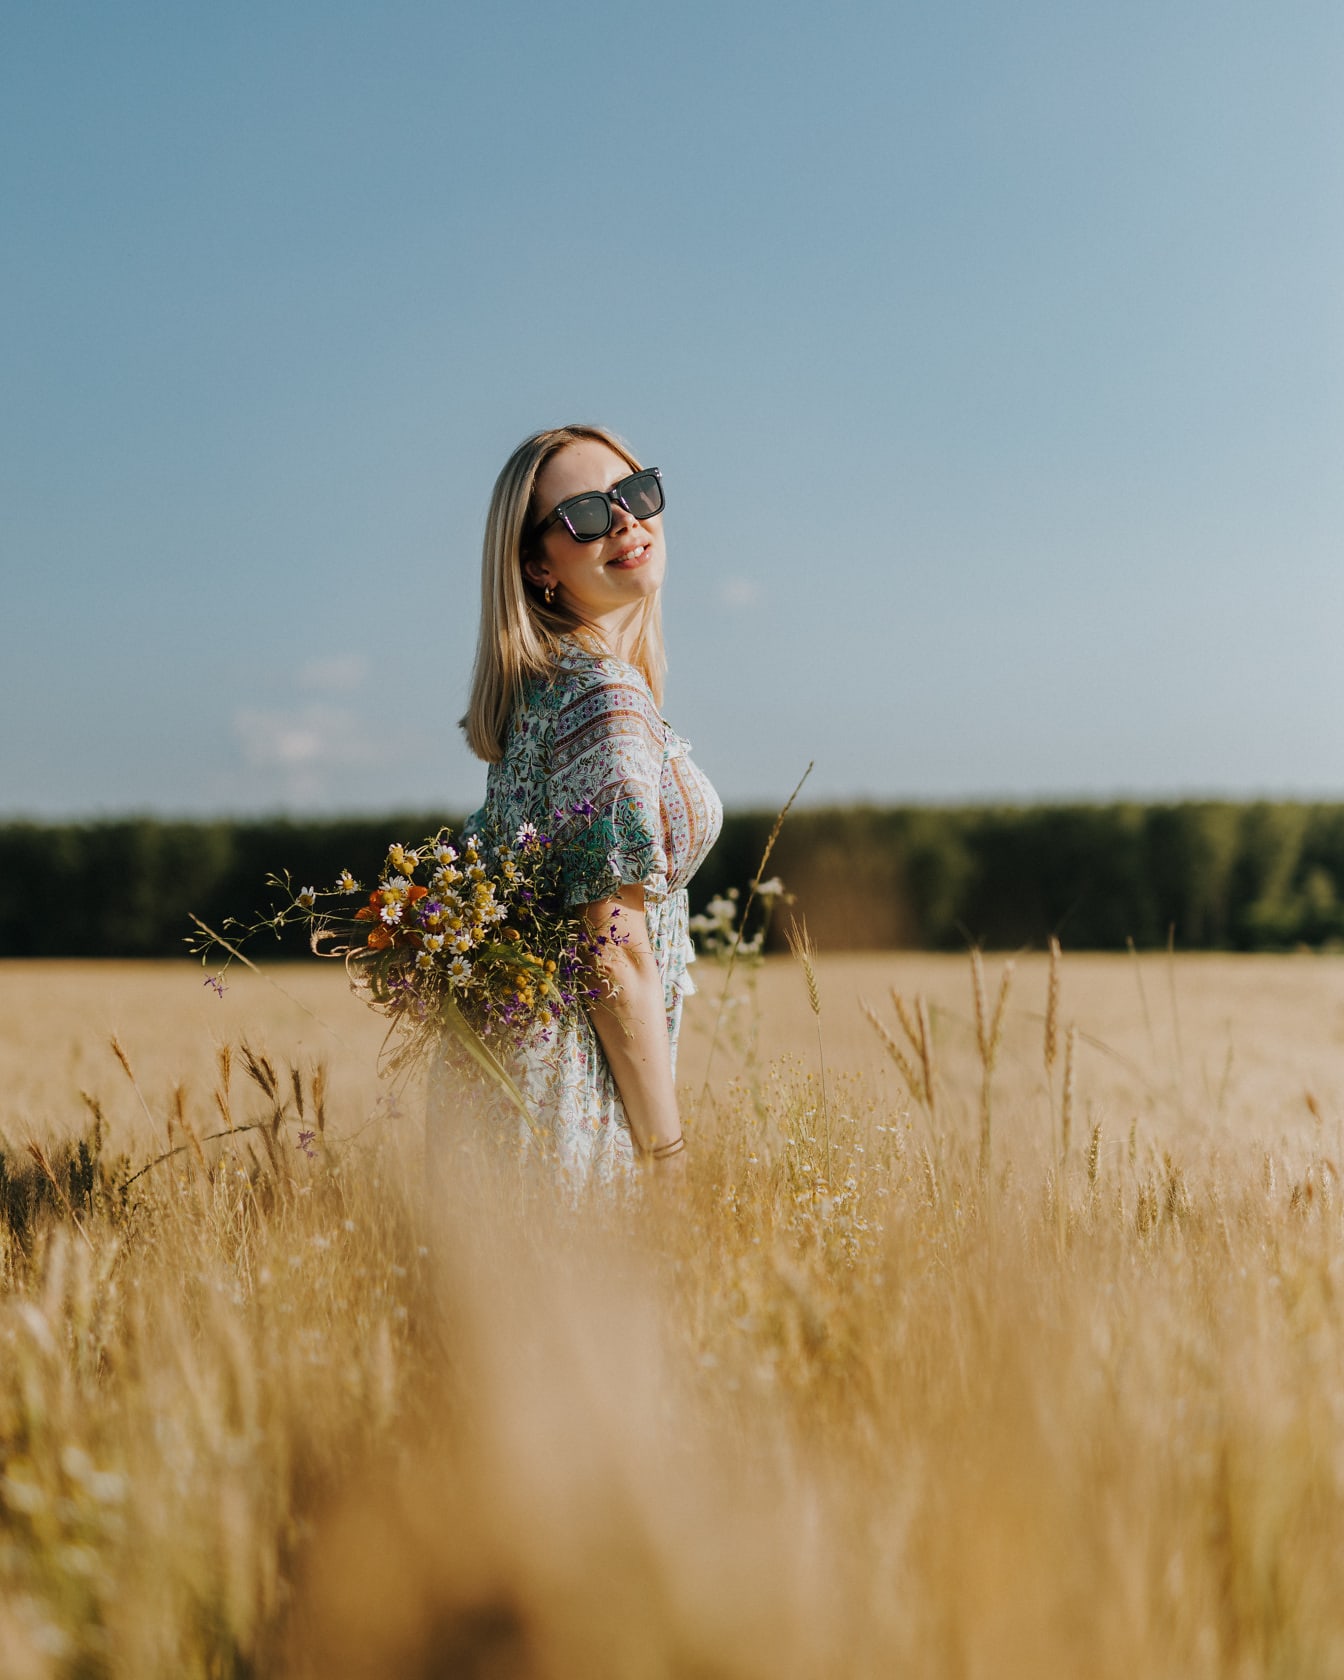 Cheveux de blone souriants belle femme dans un champ de blé